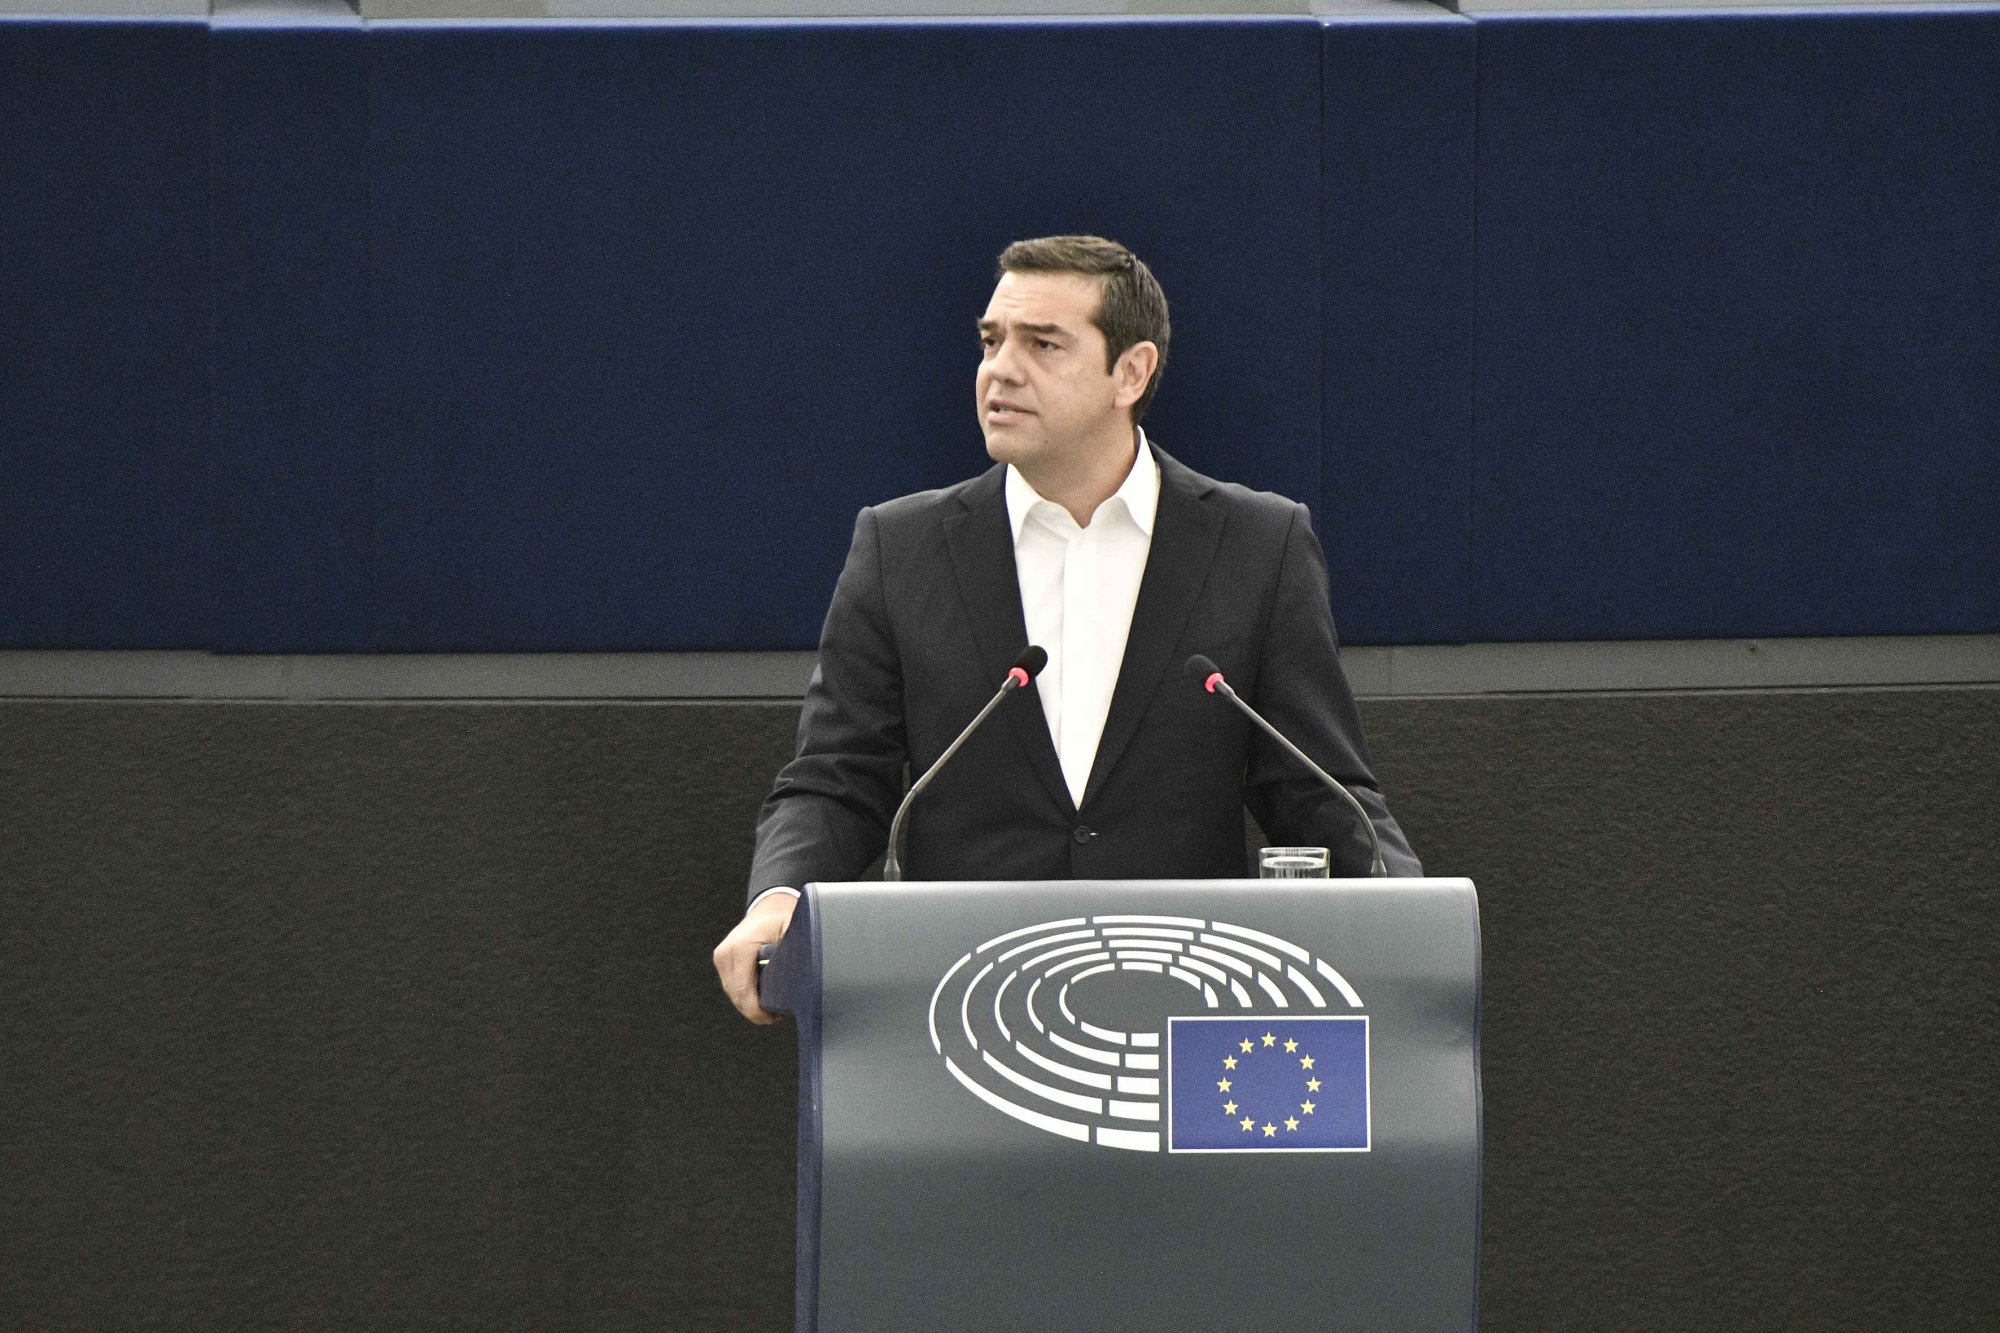 Εκλογή Τσίπρα ως Προέδρου της Επιτροπής του Συμβουλίου της Ευρώπης με στήριξη από ΓΑΠ και Ντόρα